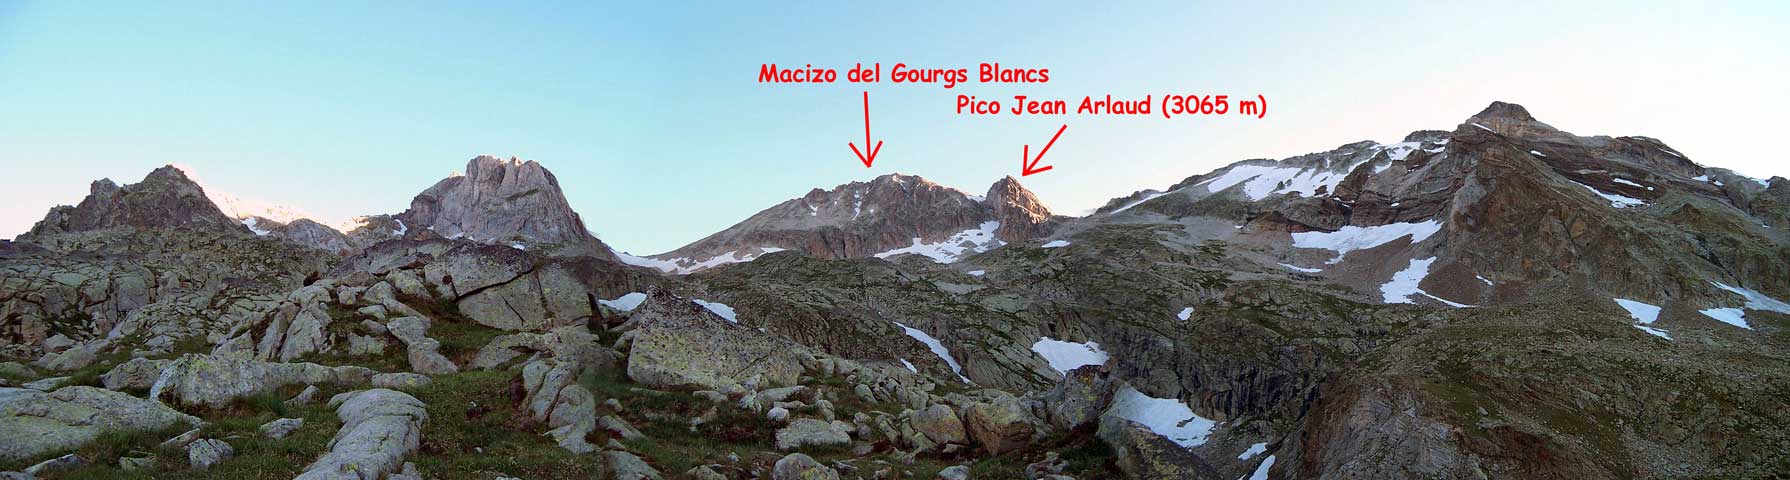 el Gourgs Blancs (3129 m), y a su derecha, el Jean Arlaud (3065 m) con su estela inconfundible